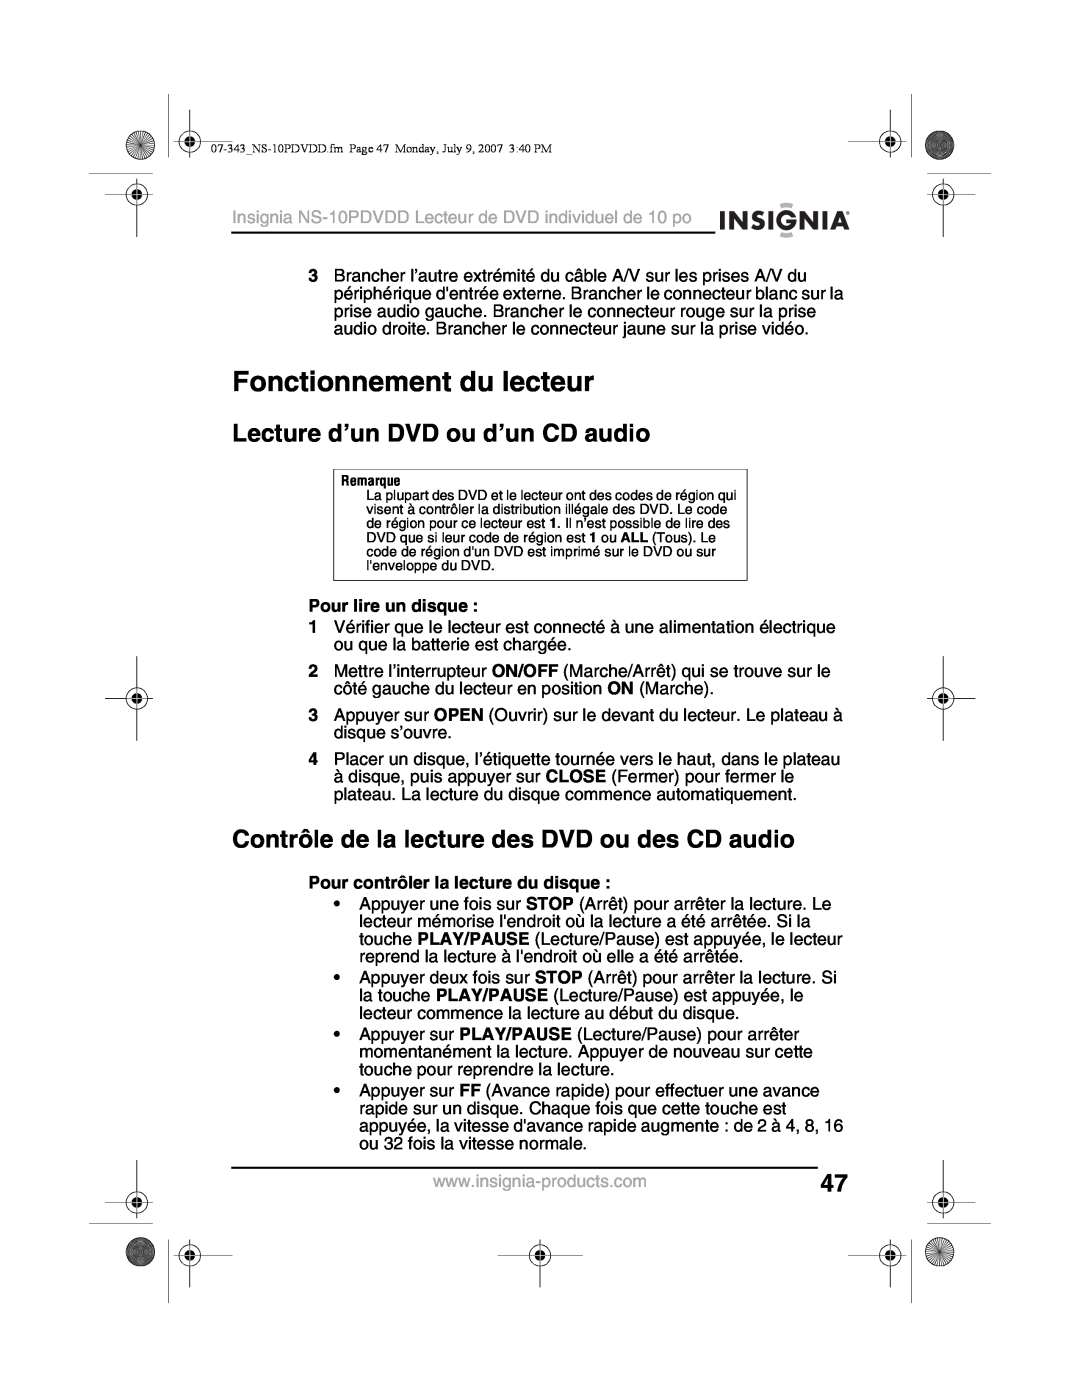 Insignia NS-10PDVDD manual Fonctionnement du lecteur, Lecture d’un DVD ou d’un CD audio, Pour lire un disque 